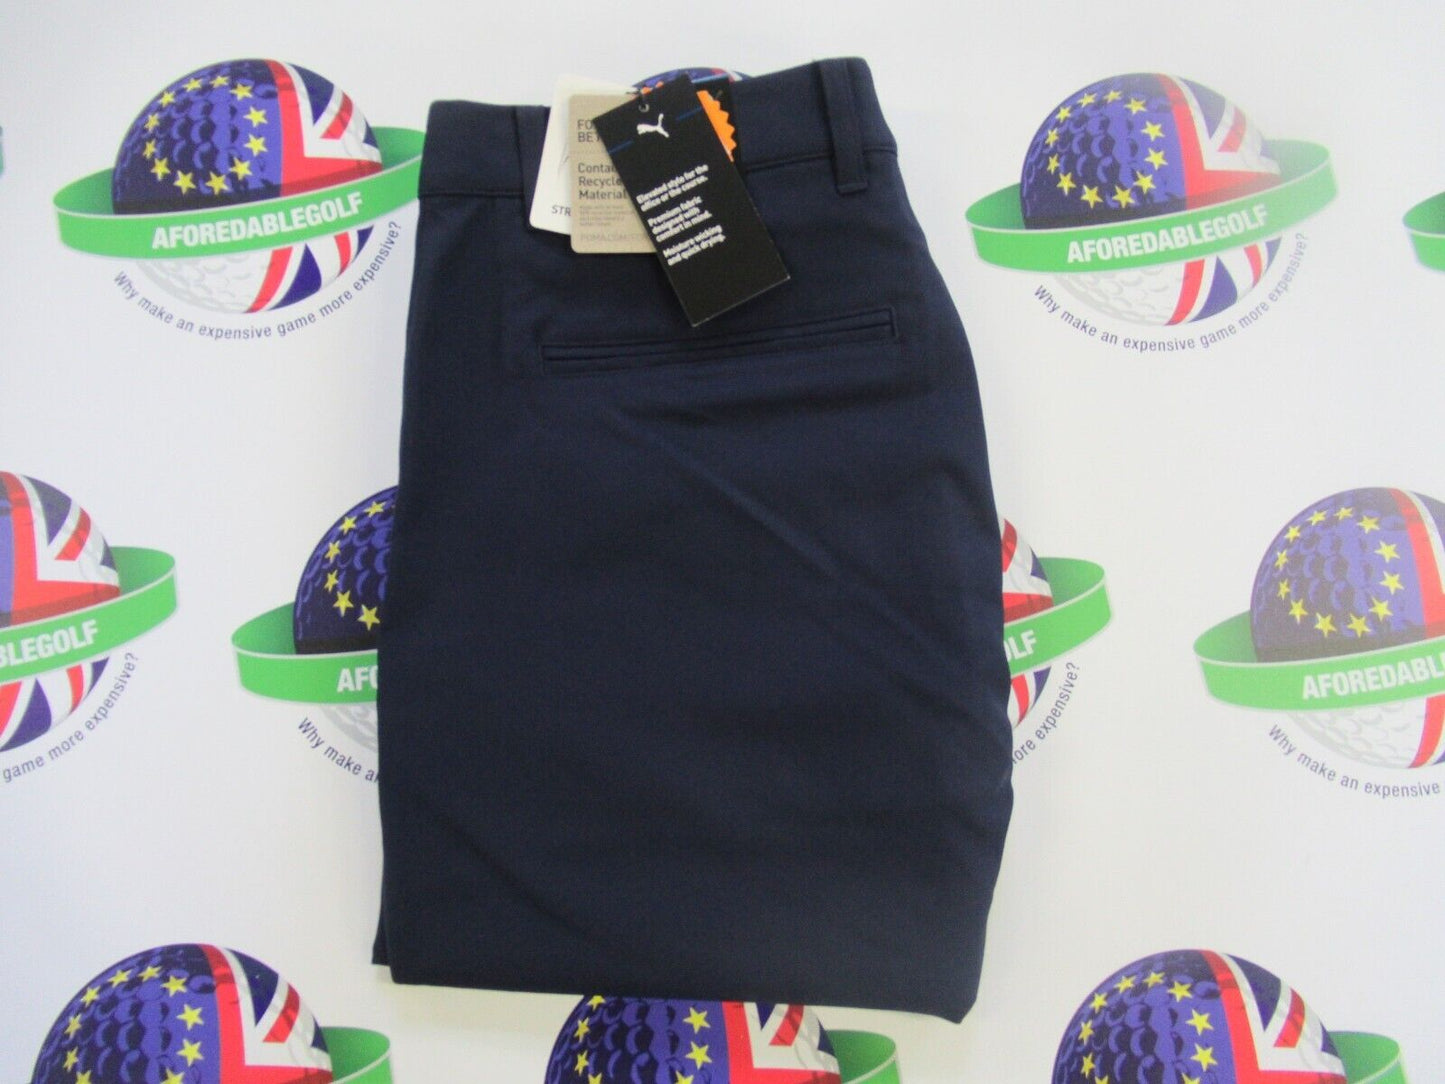 puma dealer tailored golf trousers navy blazer waist 34" x leg 34"